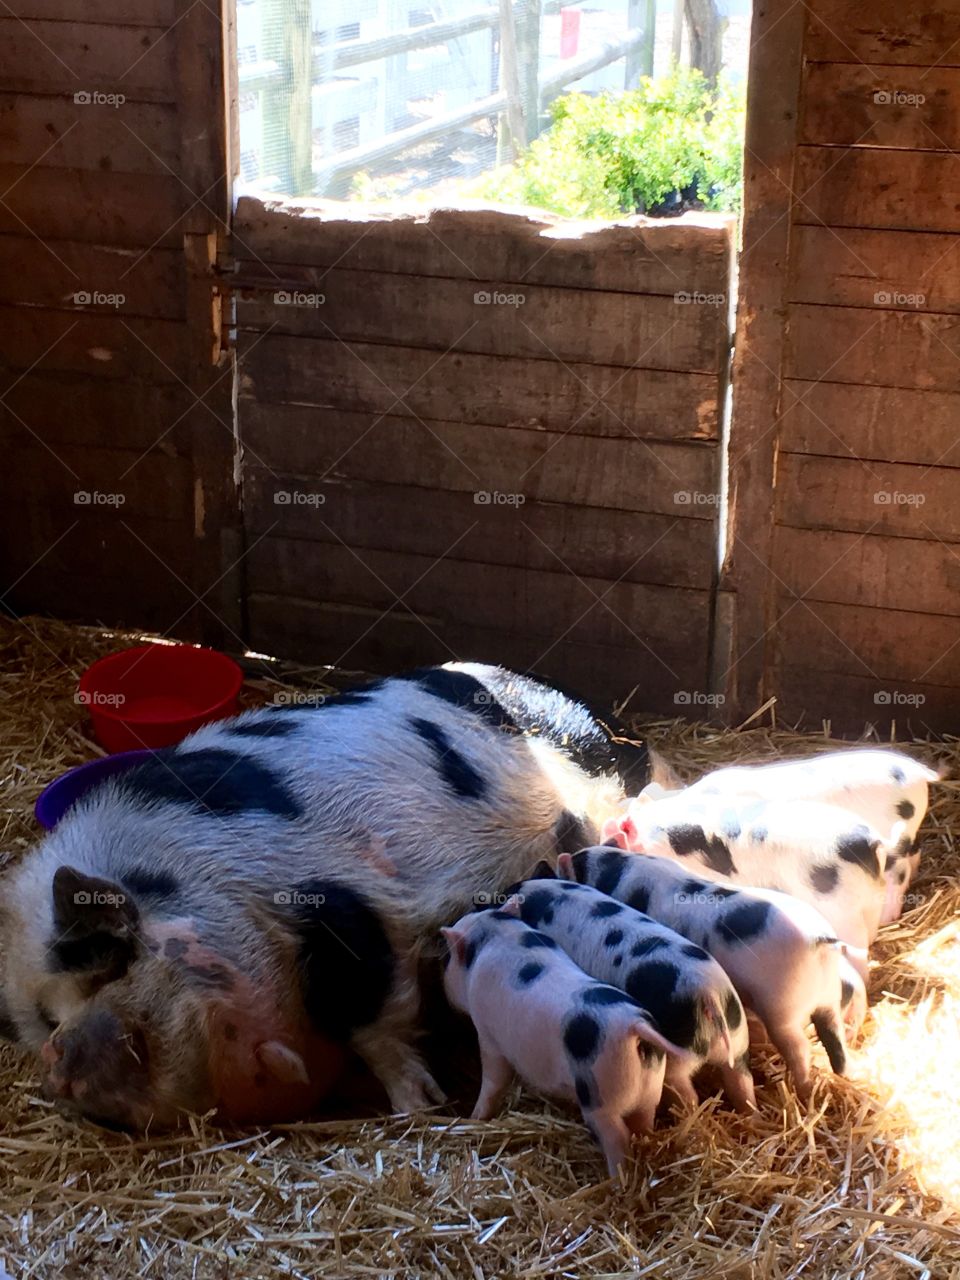 Motherhood of a pig. 